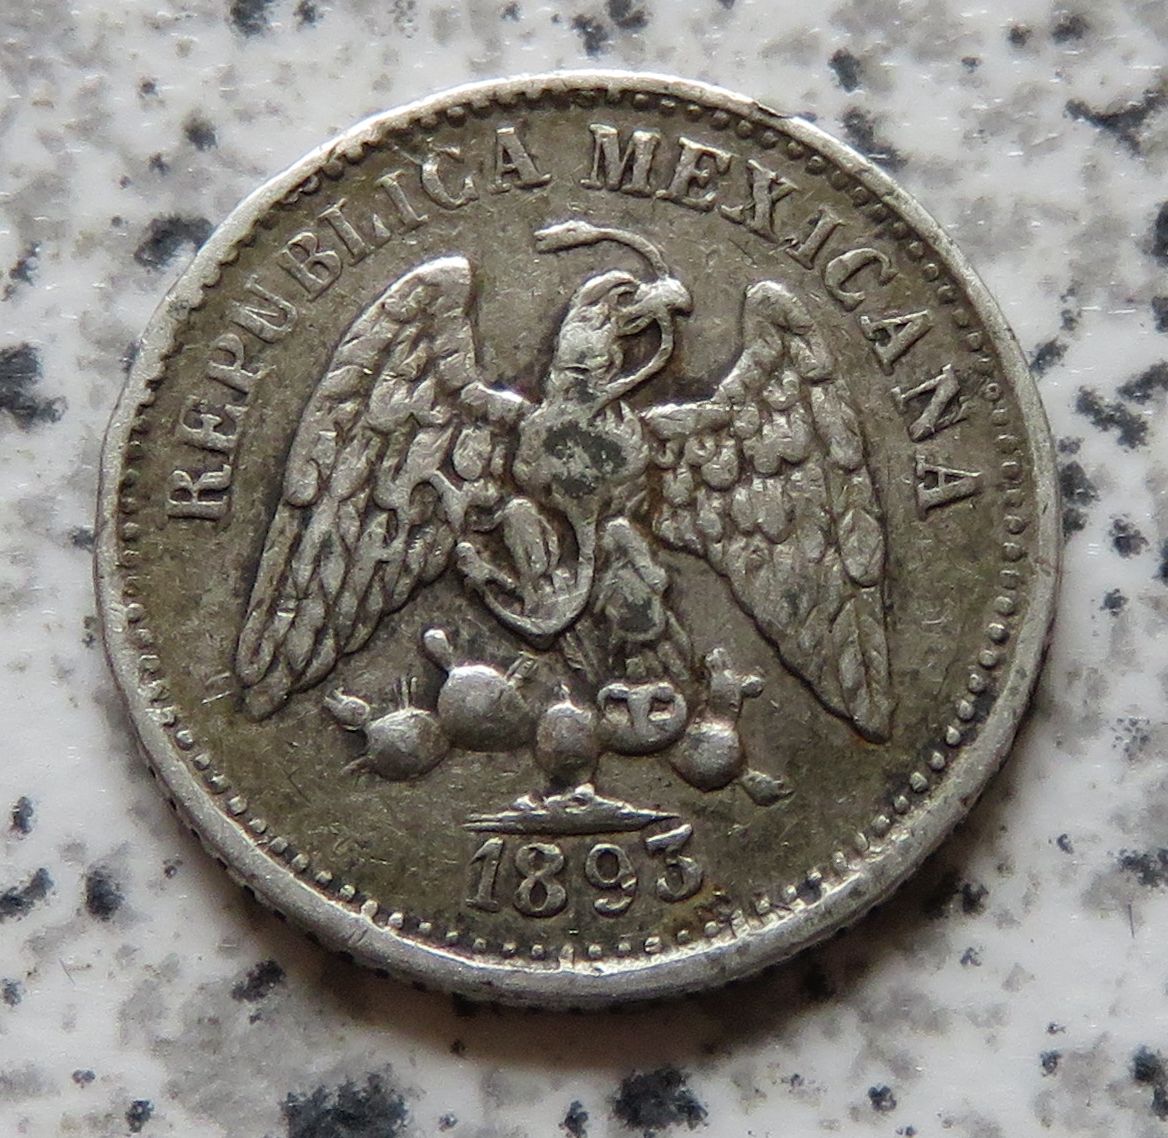  Mexiko 5 Centavos 1893 Ga S, selten   